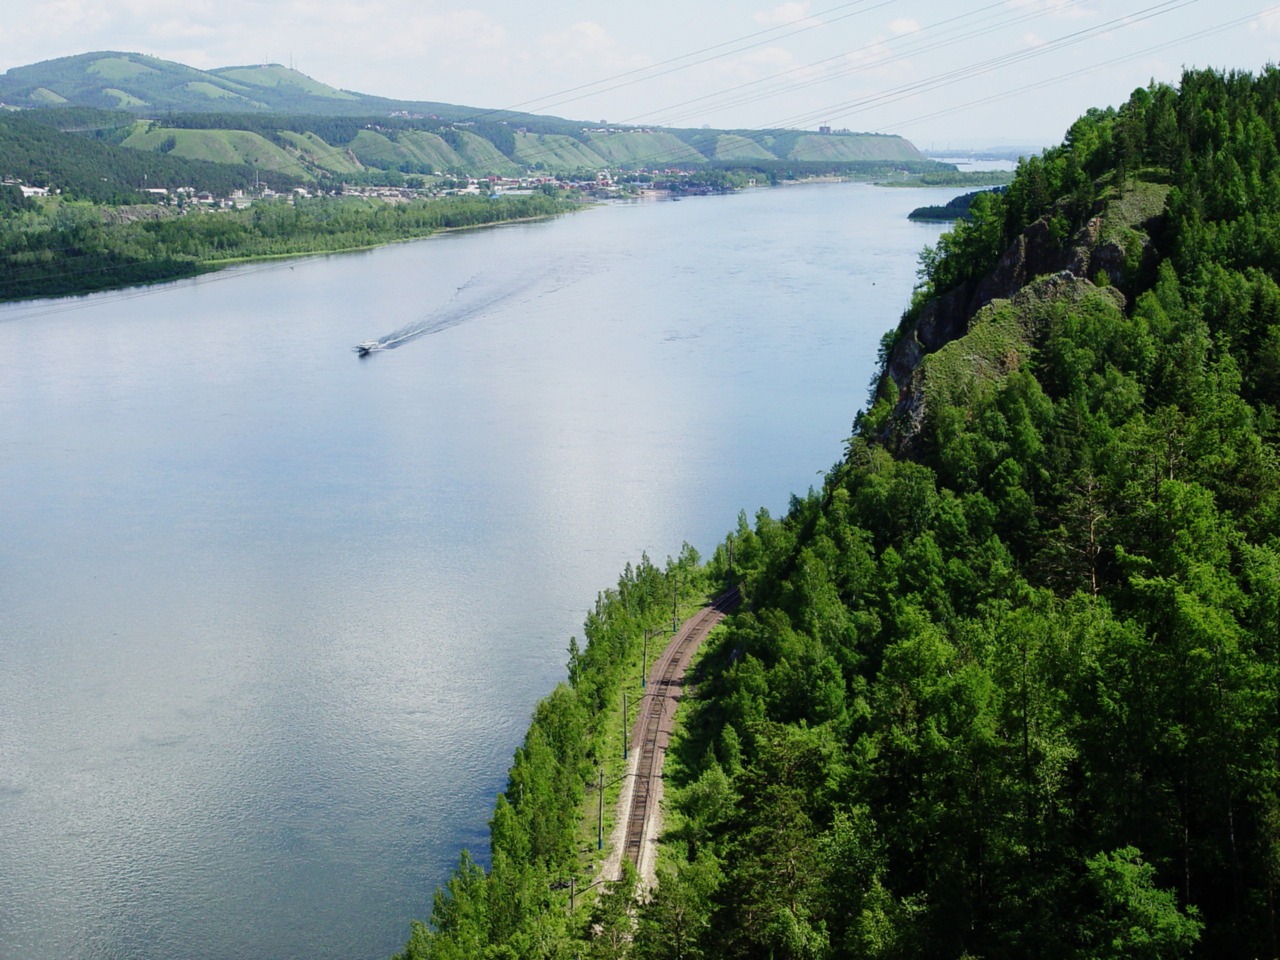 "Сибирская Швейцария": ГЭС, "Столбы" и не только! | Цена 8500₽, отзывы, описание экскурсии